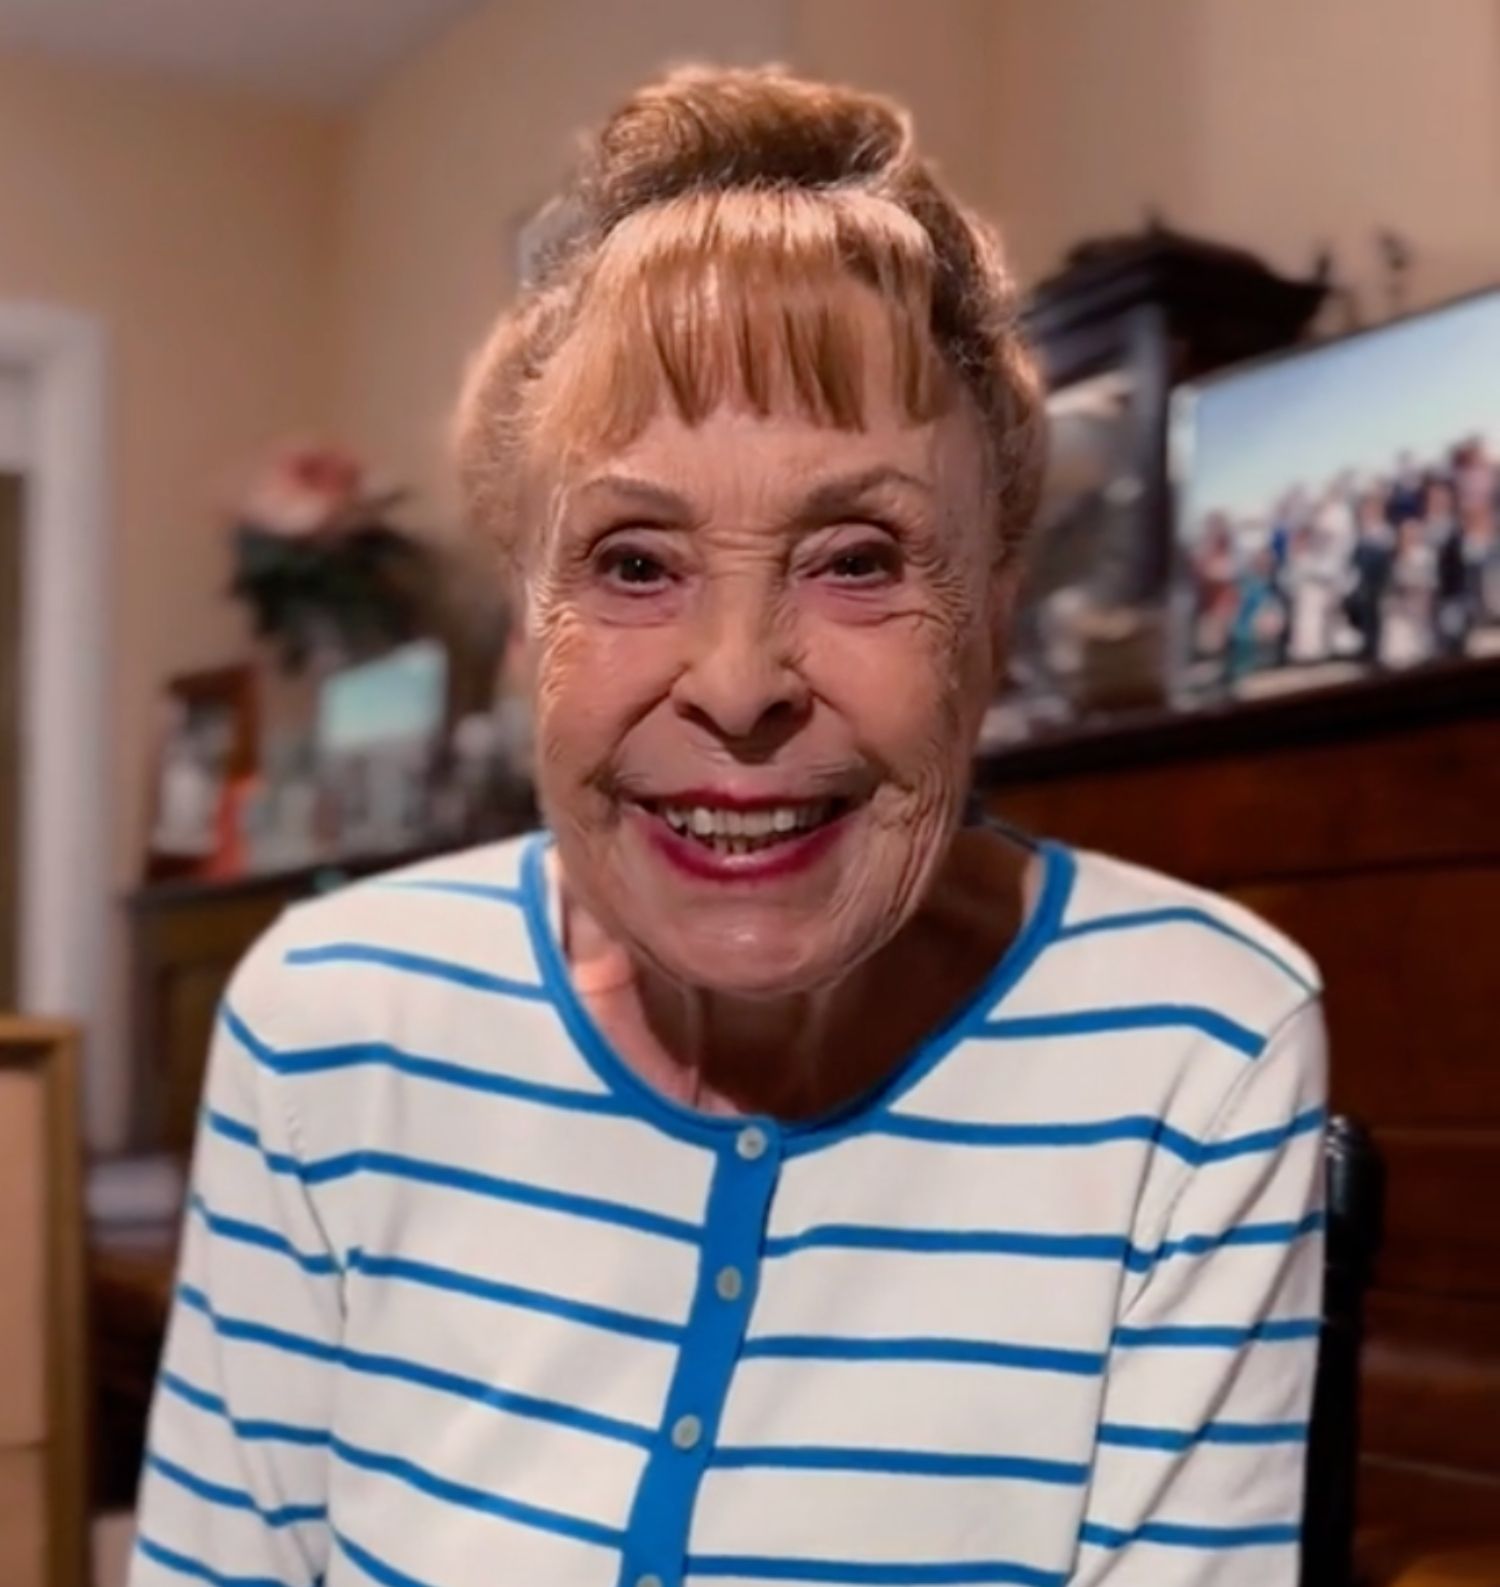 Gemma Cuervo arrasa en su estreno en TikTok a los 87 años: "Quiero muchos followers". Foto: TikTok